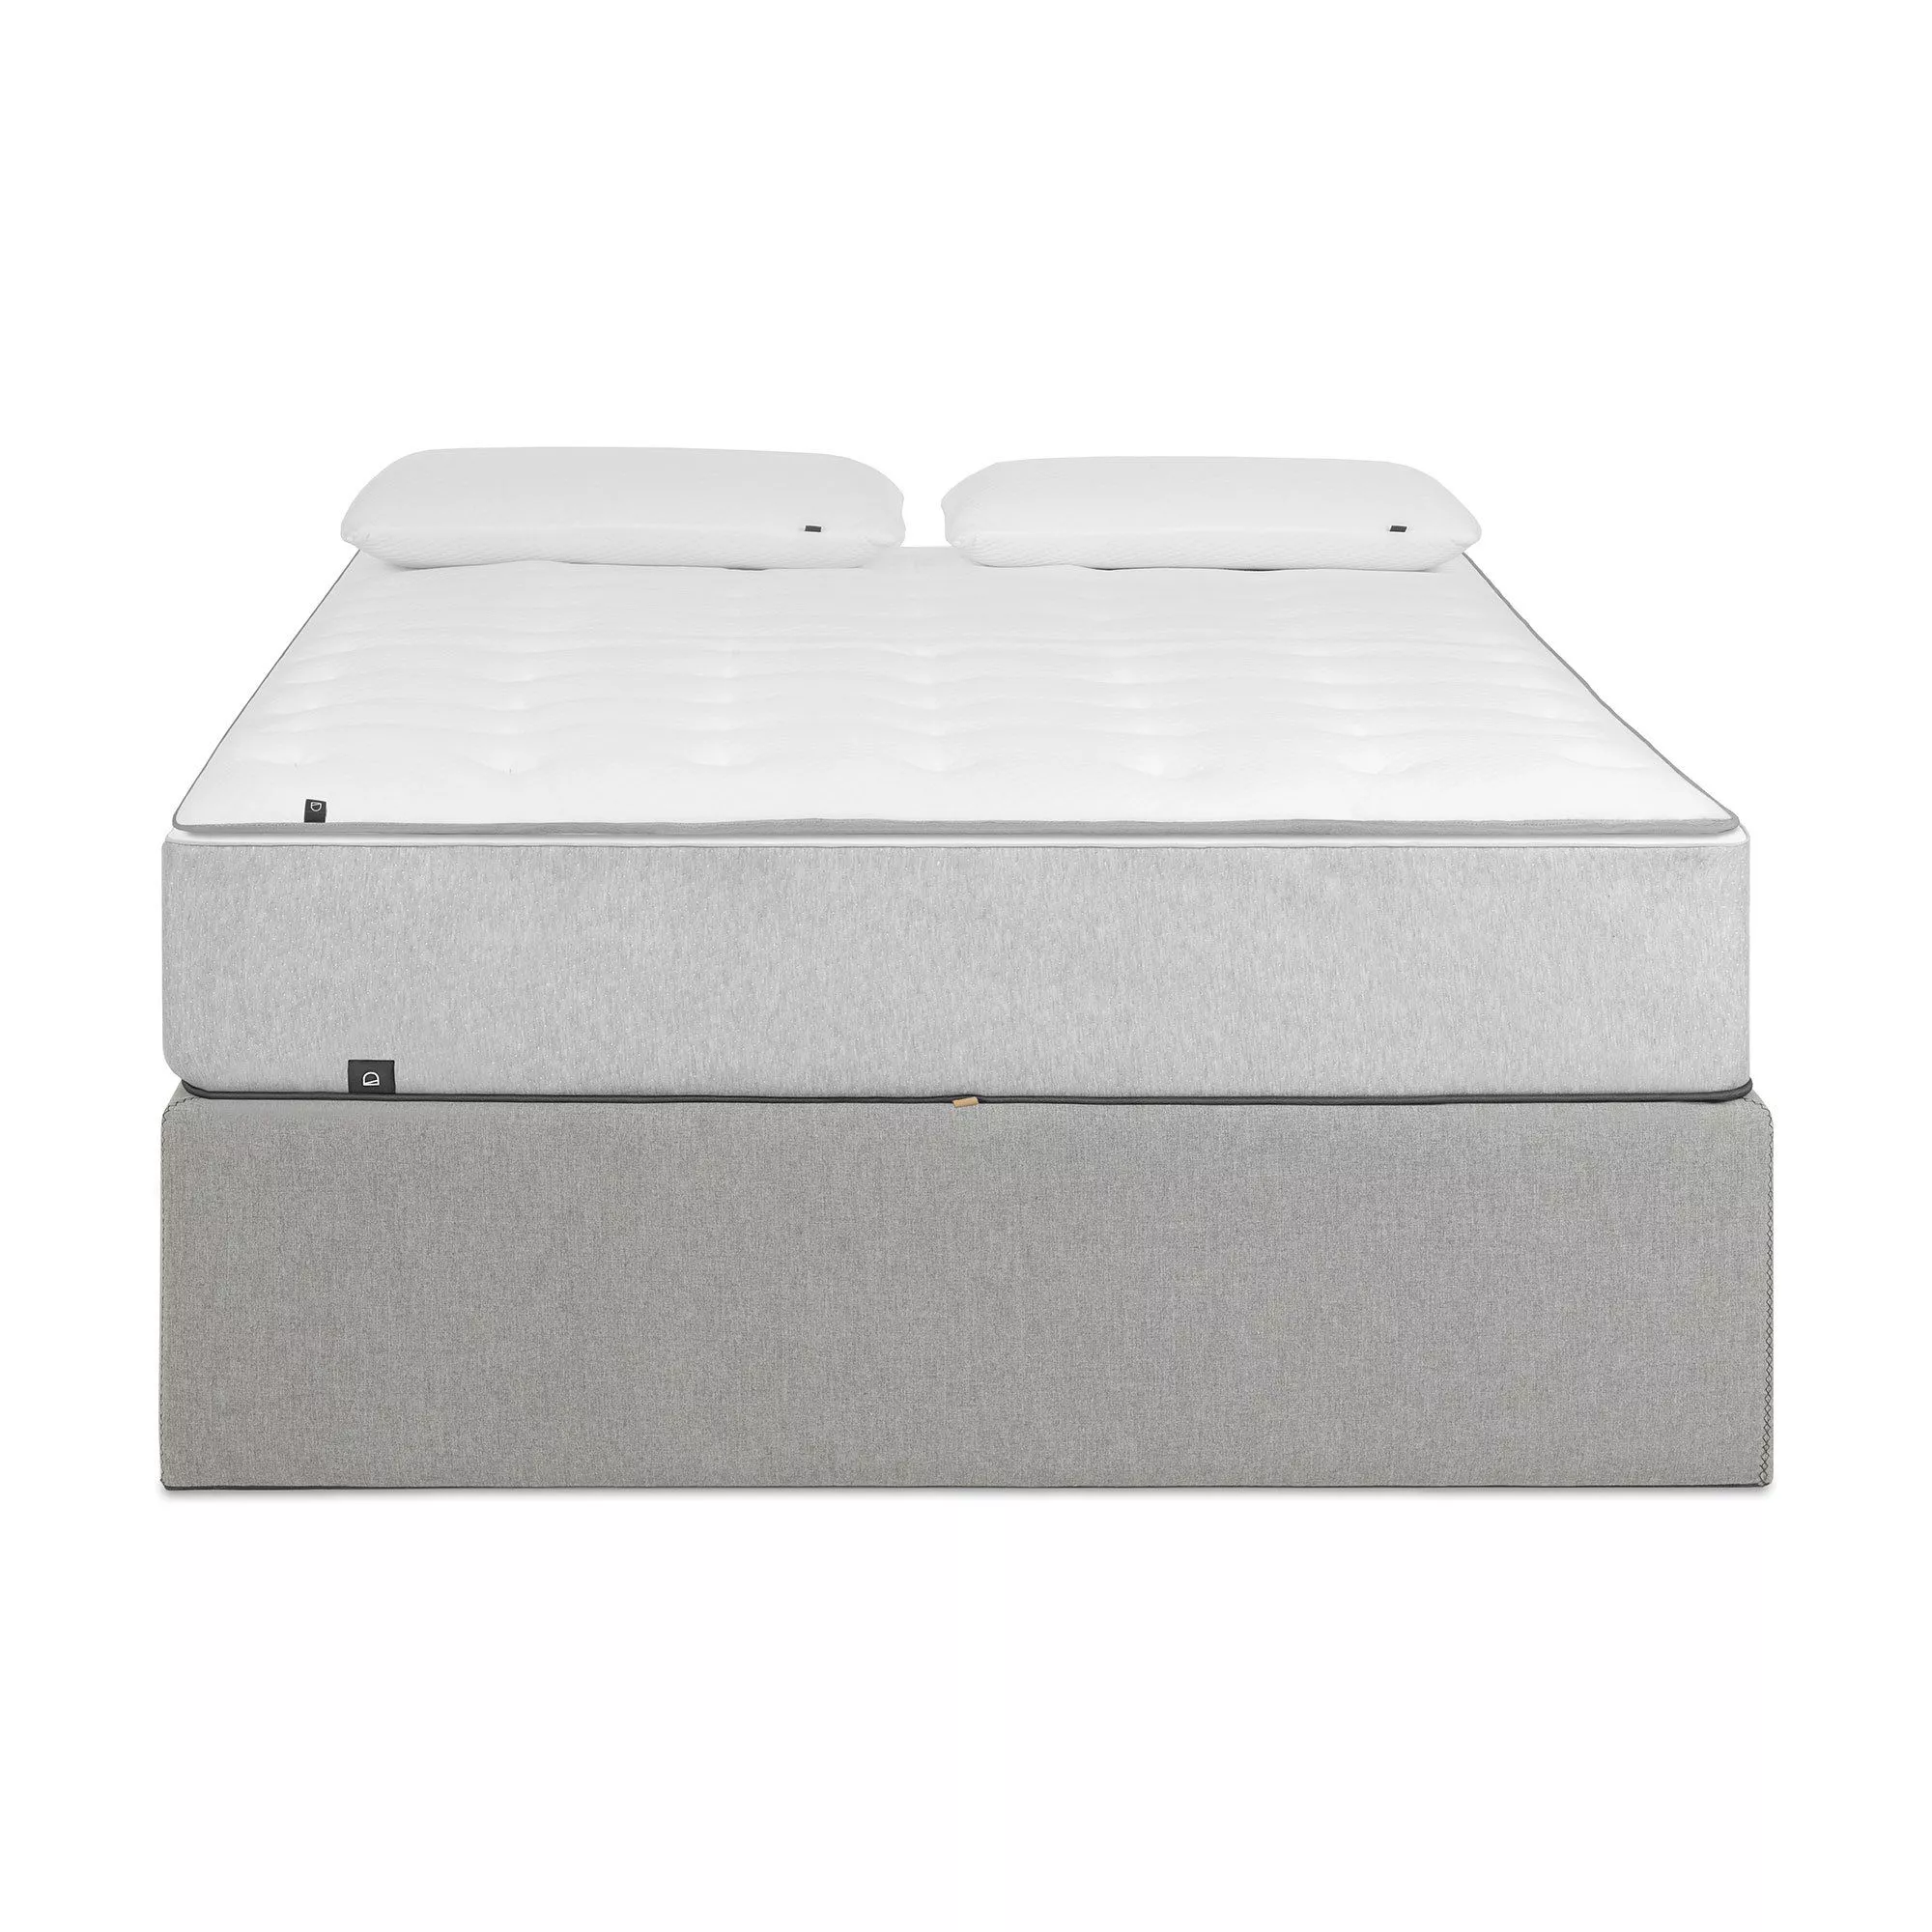 Кровать La Forma Matters c ящиком для хранения 150x190 бежевая